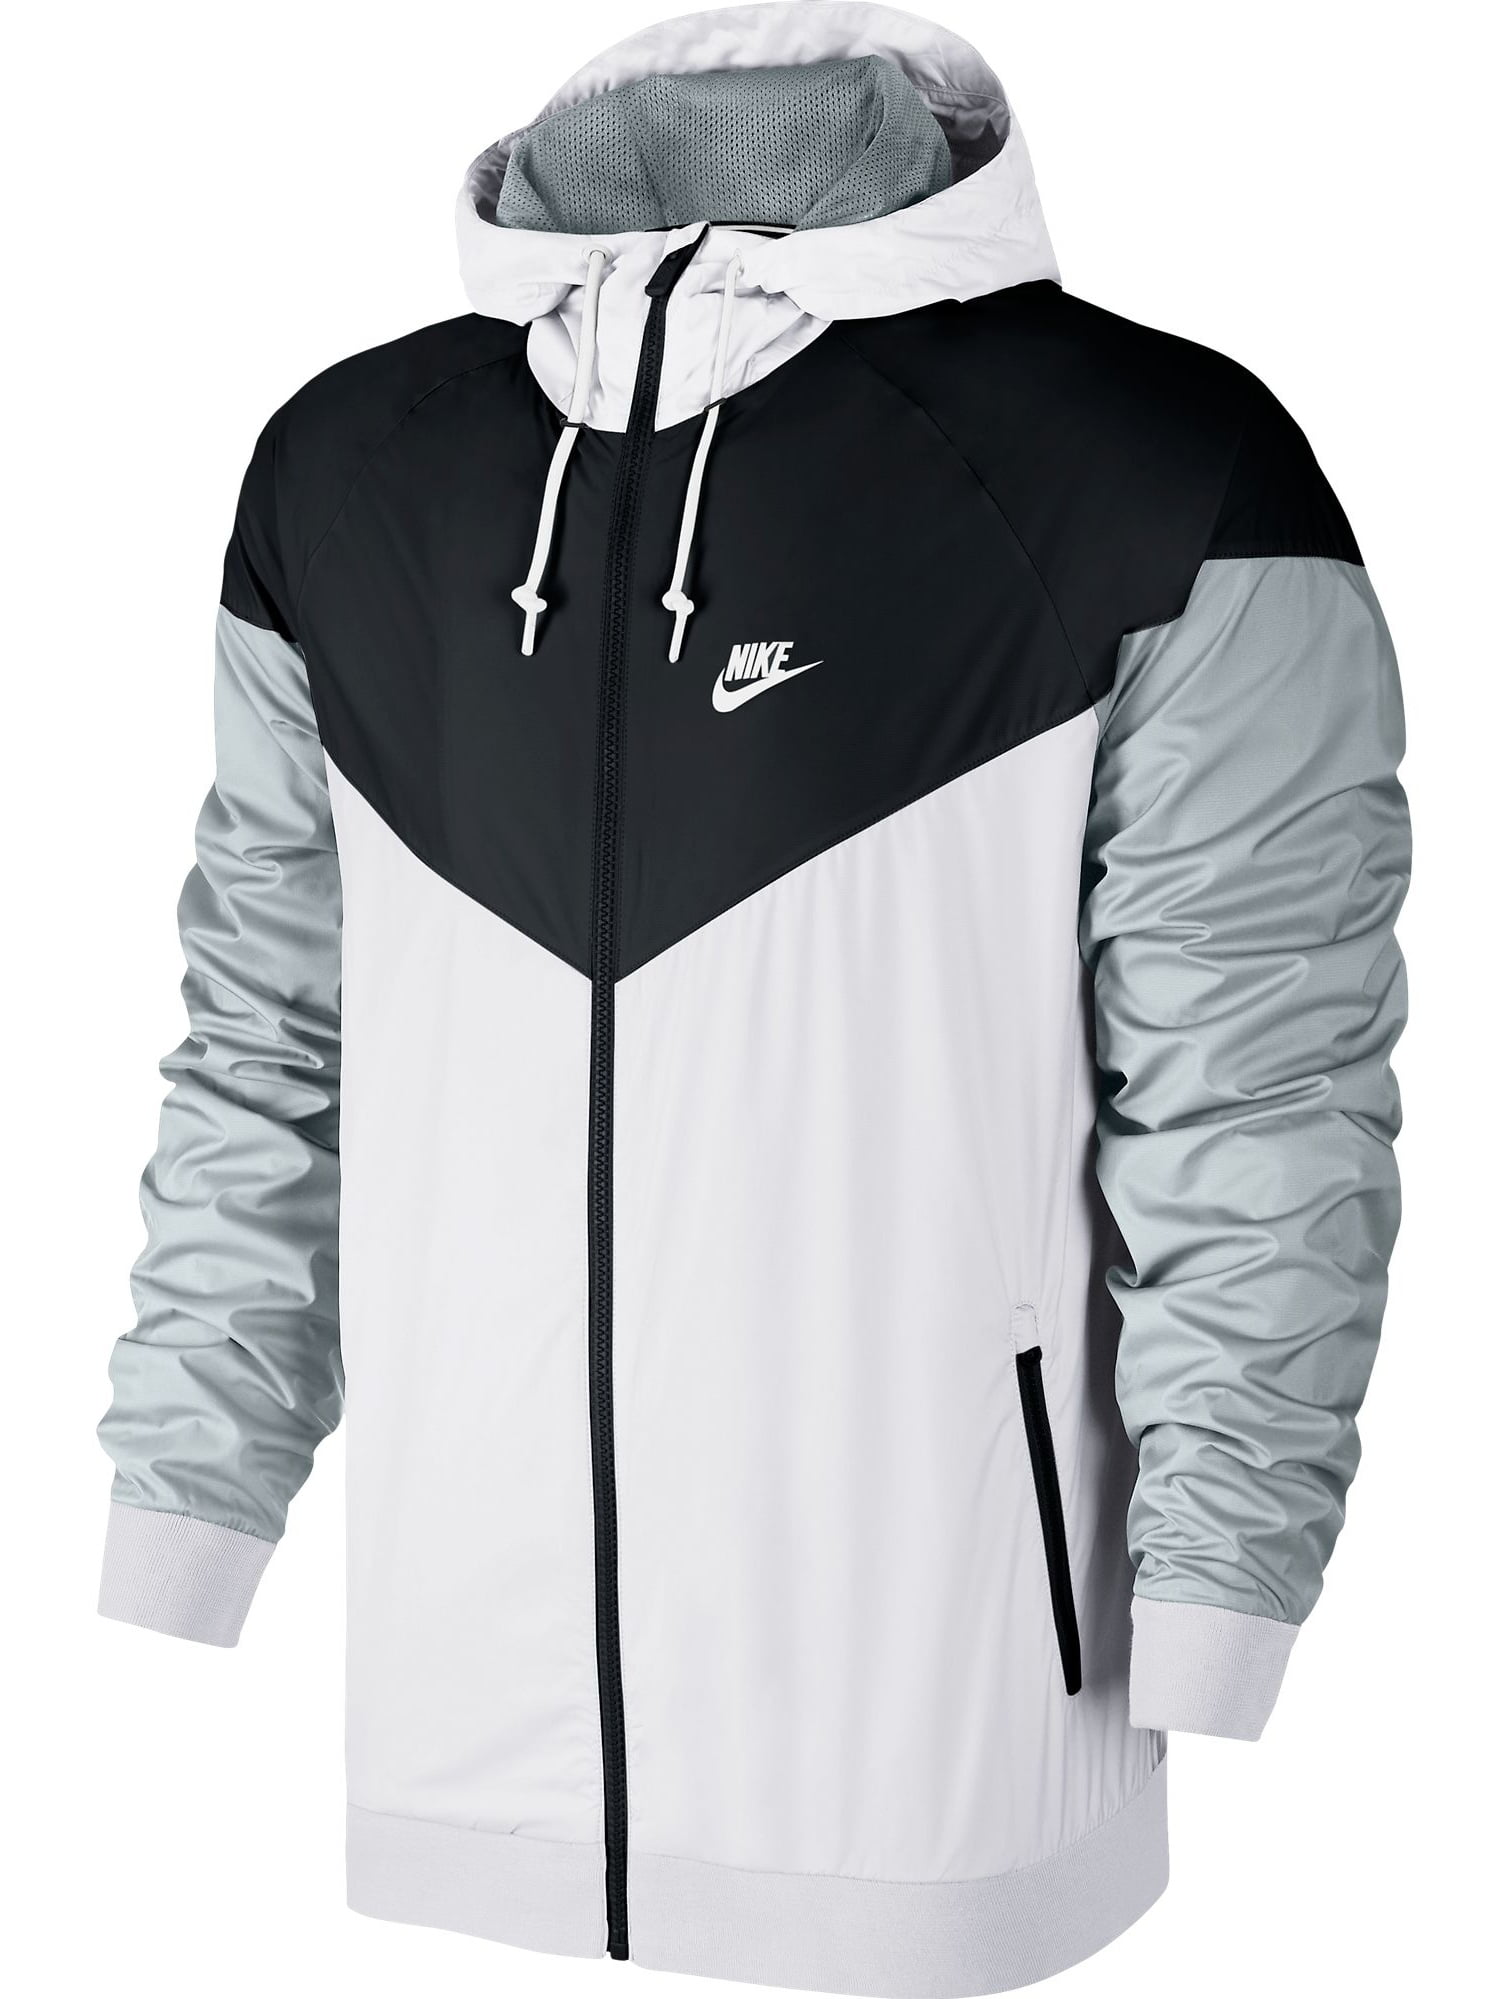 Nike Sportswear Windrunner Men's Hooded Jacket Grey - Walmart.com